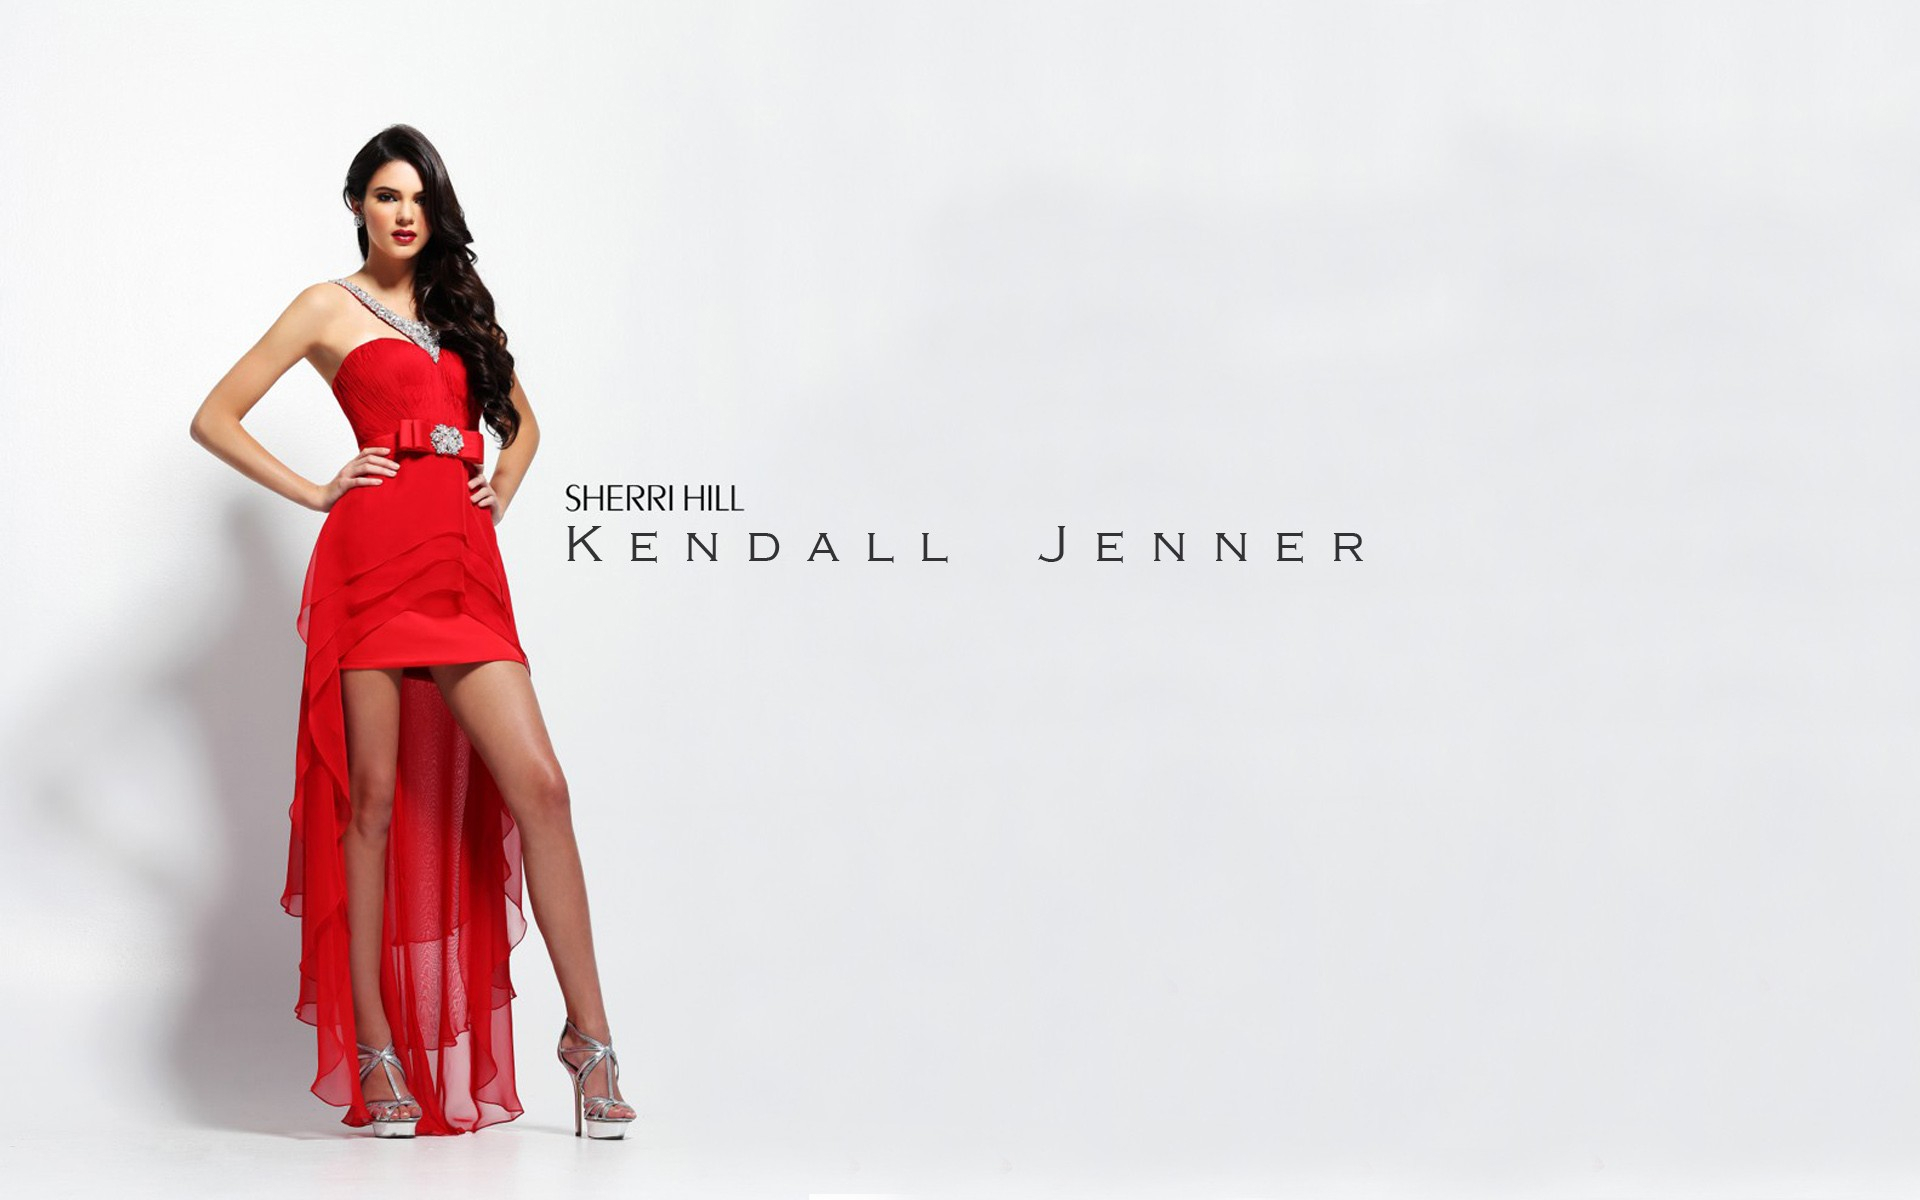 Free download wallpaper Brunette, Model, American, Necklace, Celebrity, Red Dress, Kendall Jenner on your PC desktop